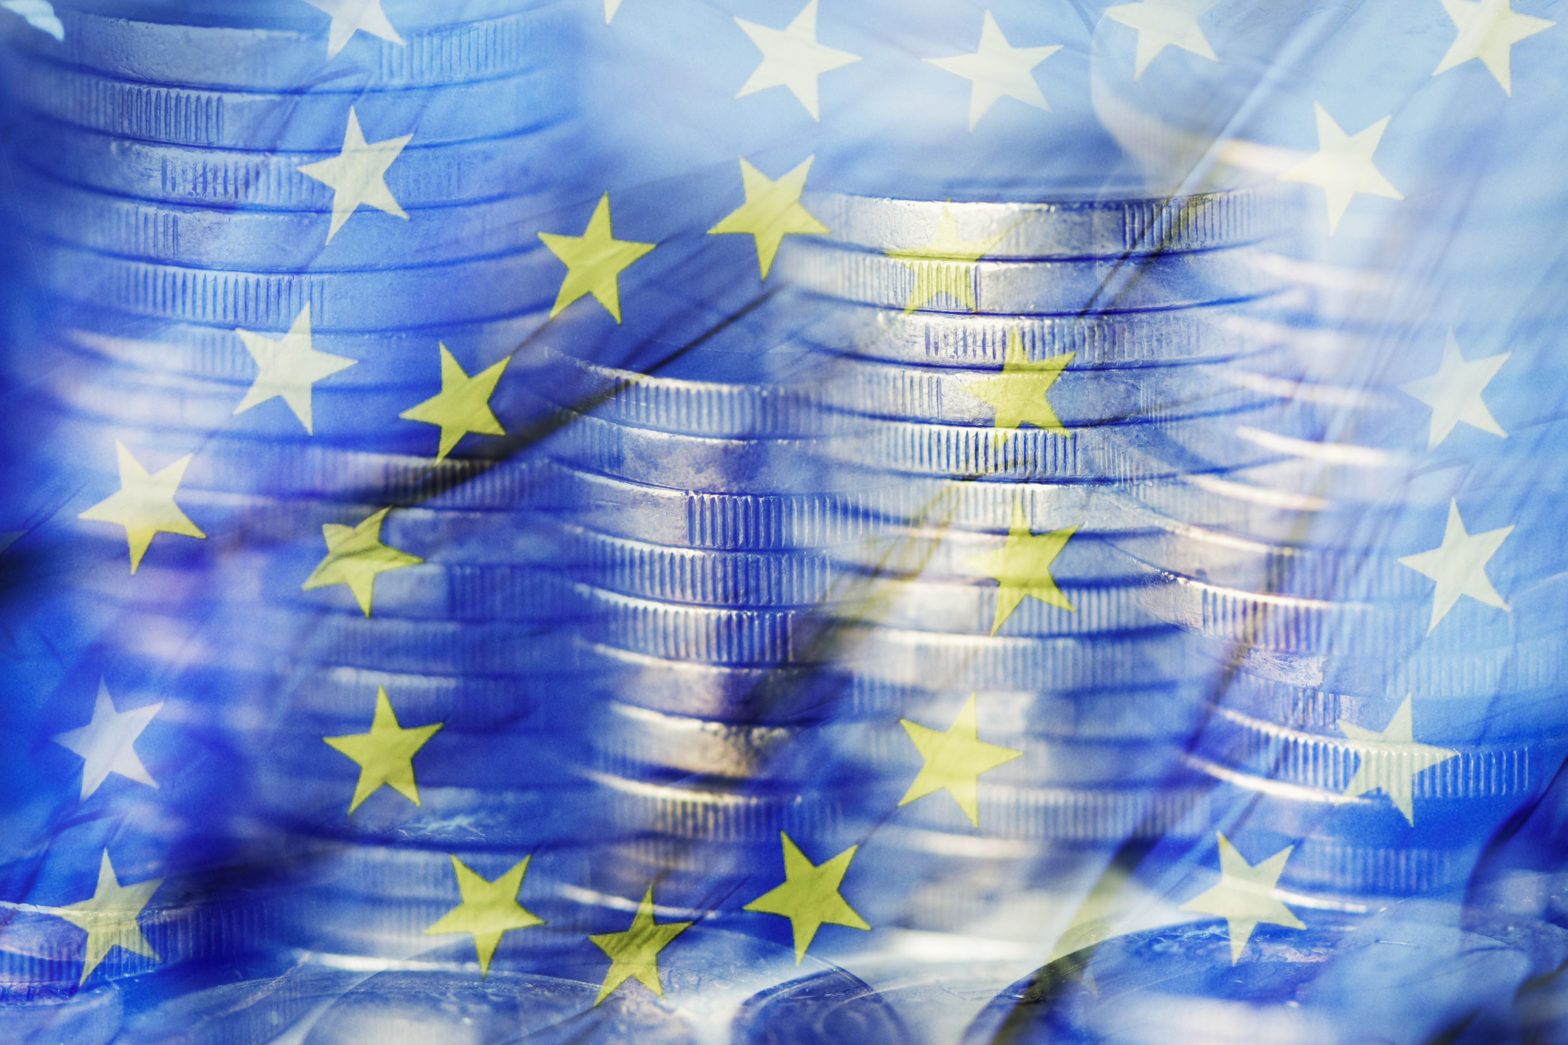 European banks ‘still facing strong headwinds’